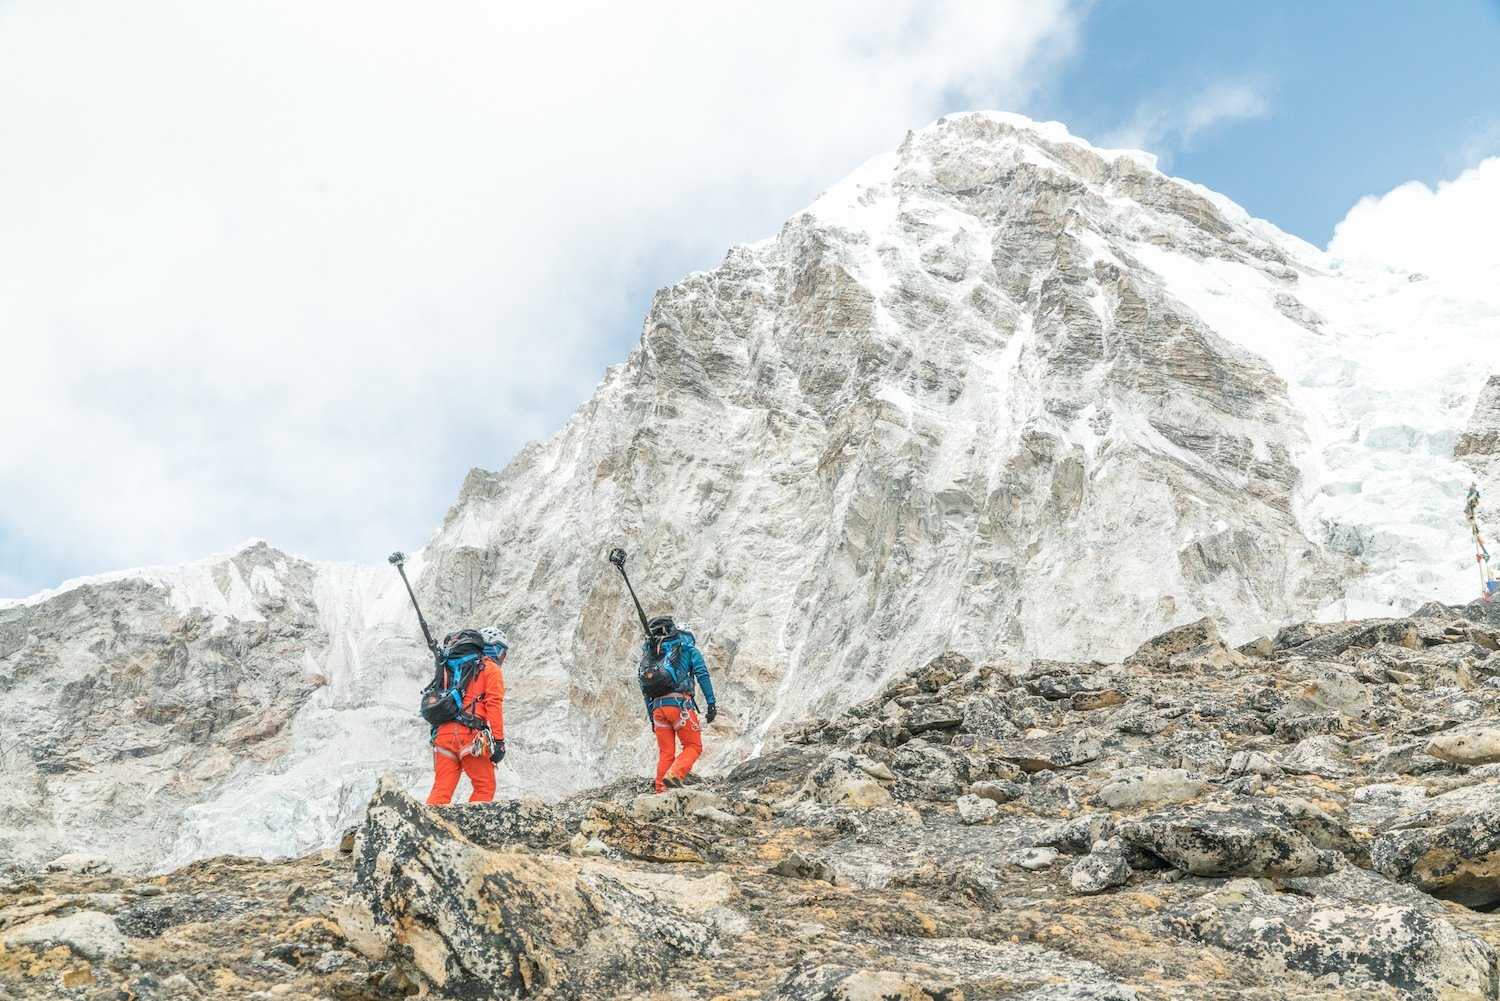 Webtipp – Mammut #PROJECT360: Digitale Erstbesteigung des Mount Everest über die Südroute